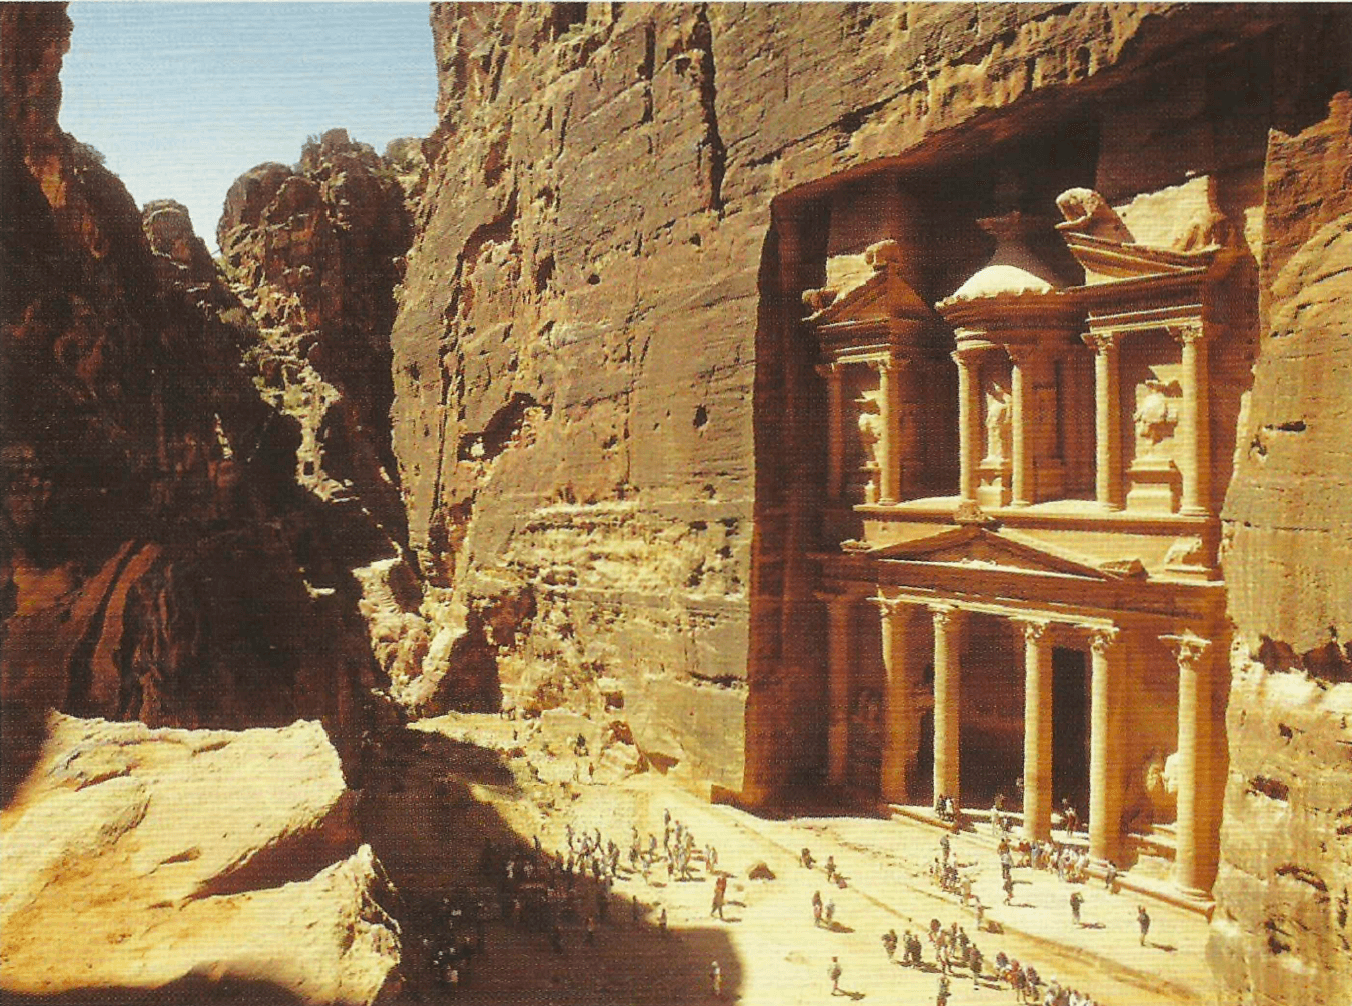 Cidade de Petra, na Jordânia, escavada na rocha; talvez identificável com a cidade de Sela no Antigo Testamento. Aqui, uma vista do templo ou tumba nabatéia de el-Khazne.